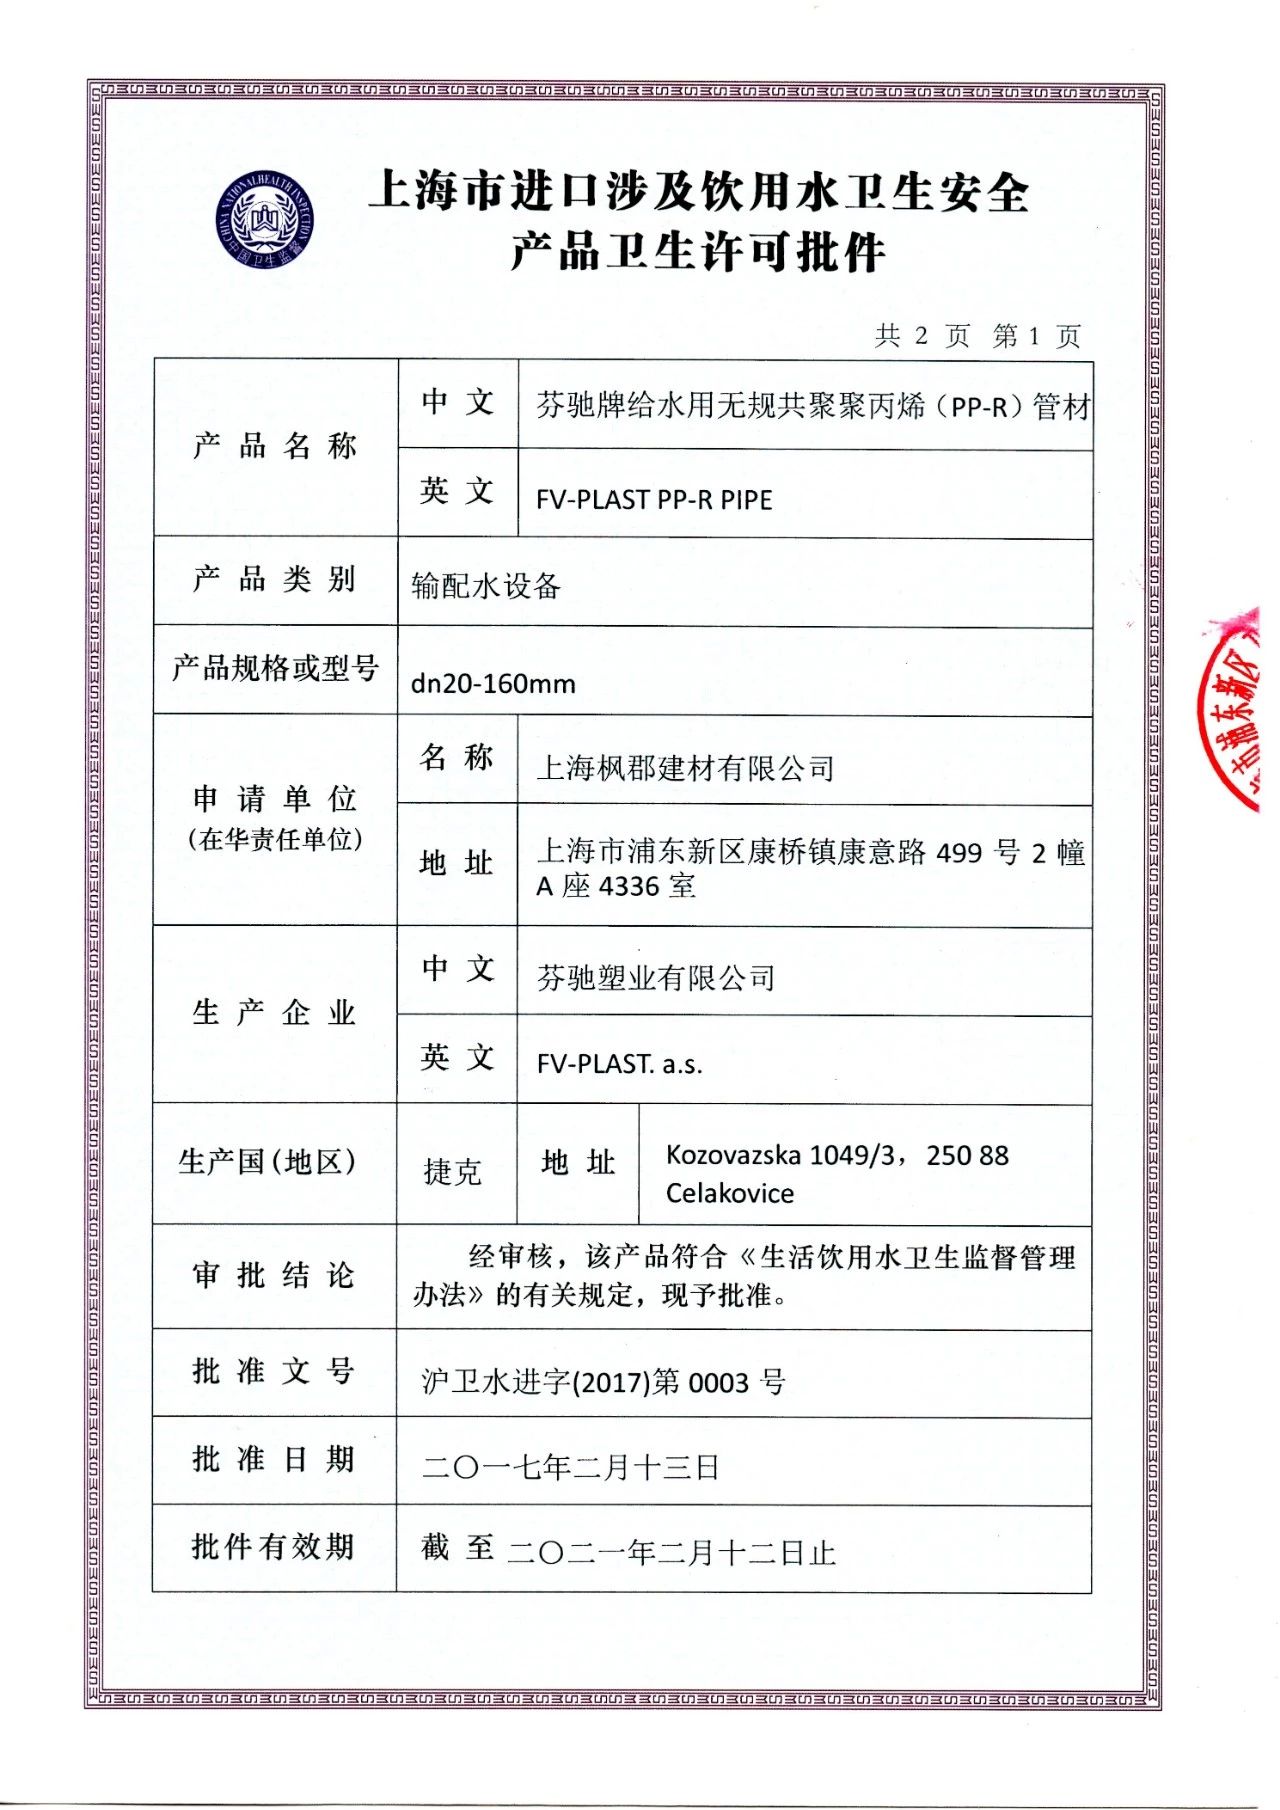 上海涉水卫生许可证